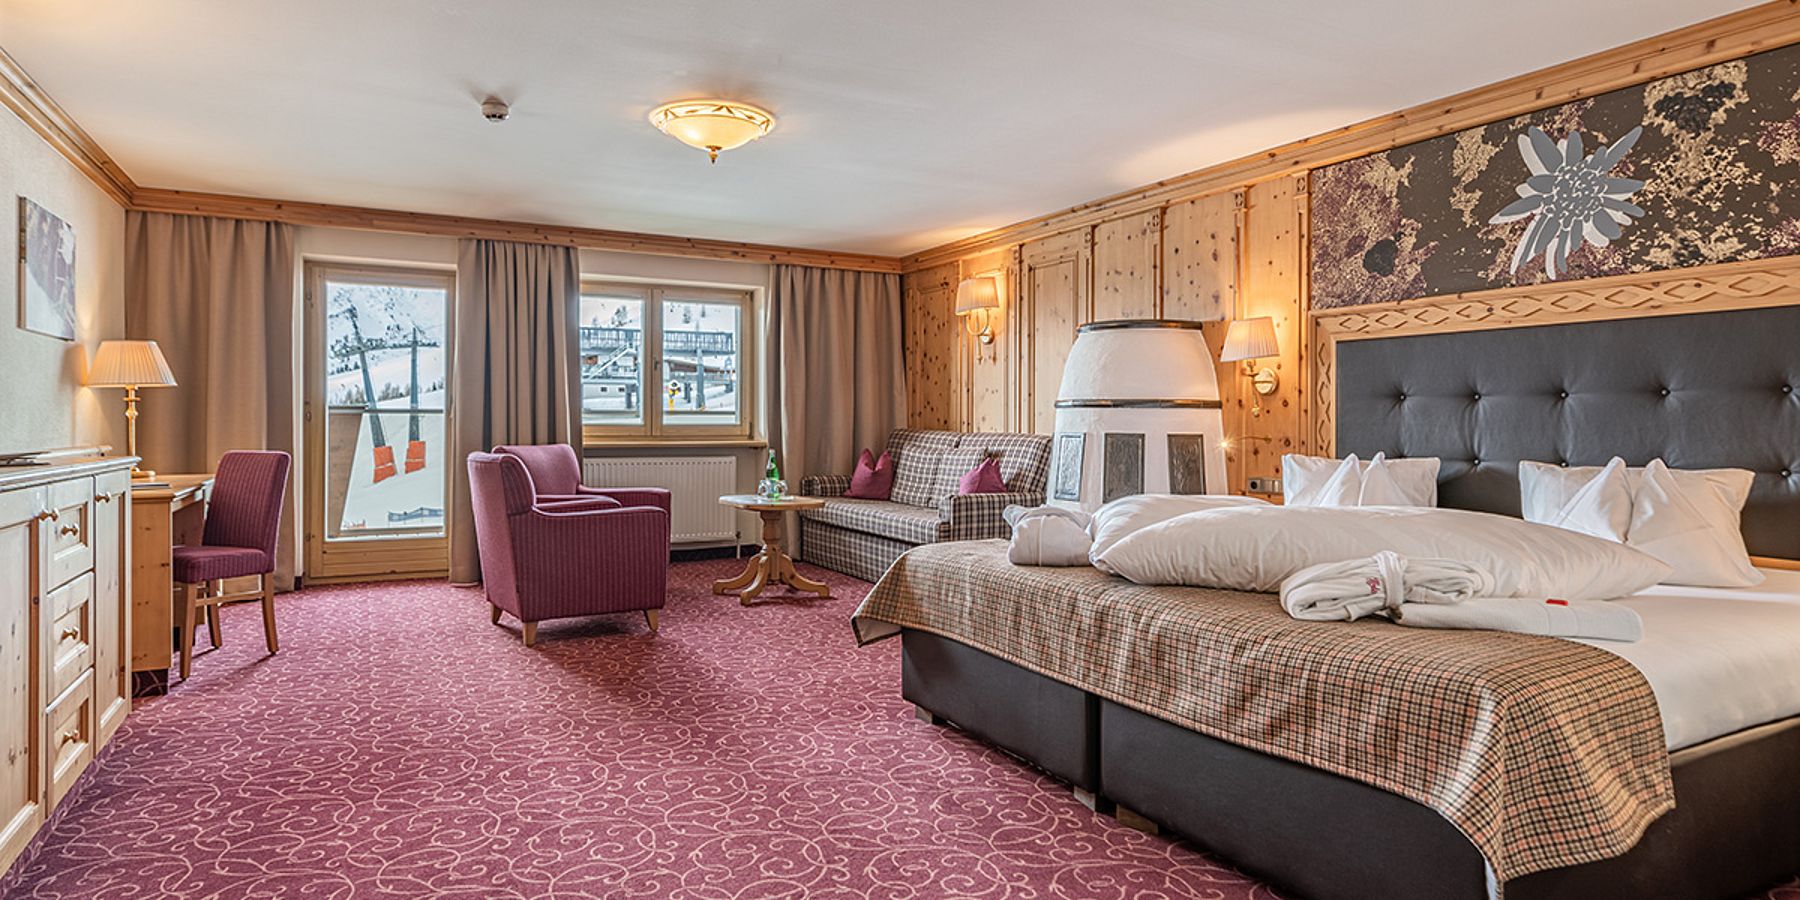 Luxuriöse Suite im Hotel Edelweiss, Hochsölden - Ihr exklusiver Rückzugsort direkt an der Skipiste von Sölden.